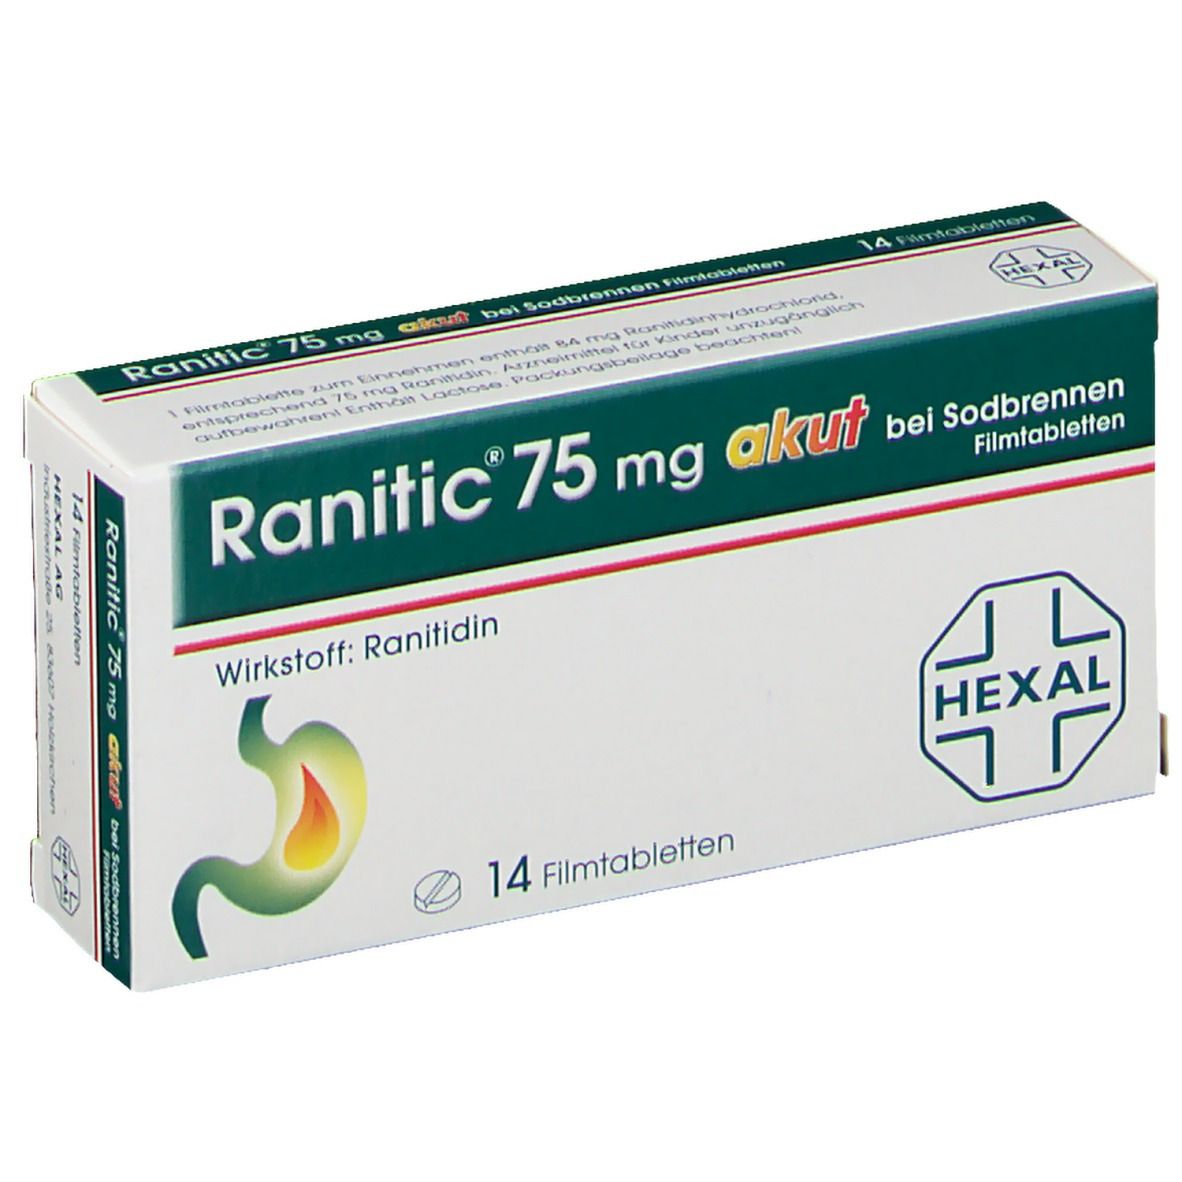 Ranitic® 75 mg akut bei Sodbrennen, Filmtabletten